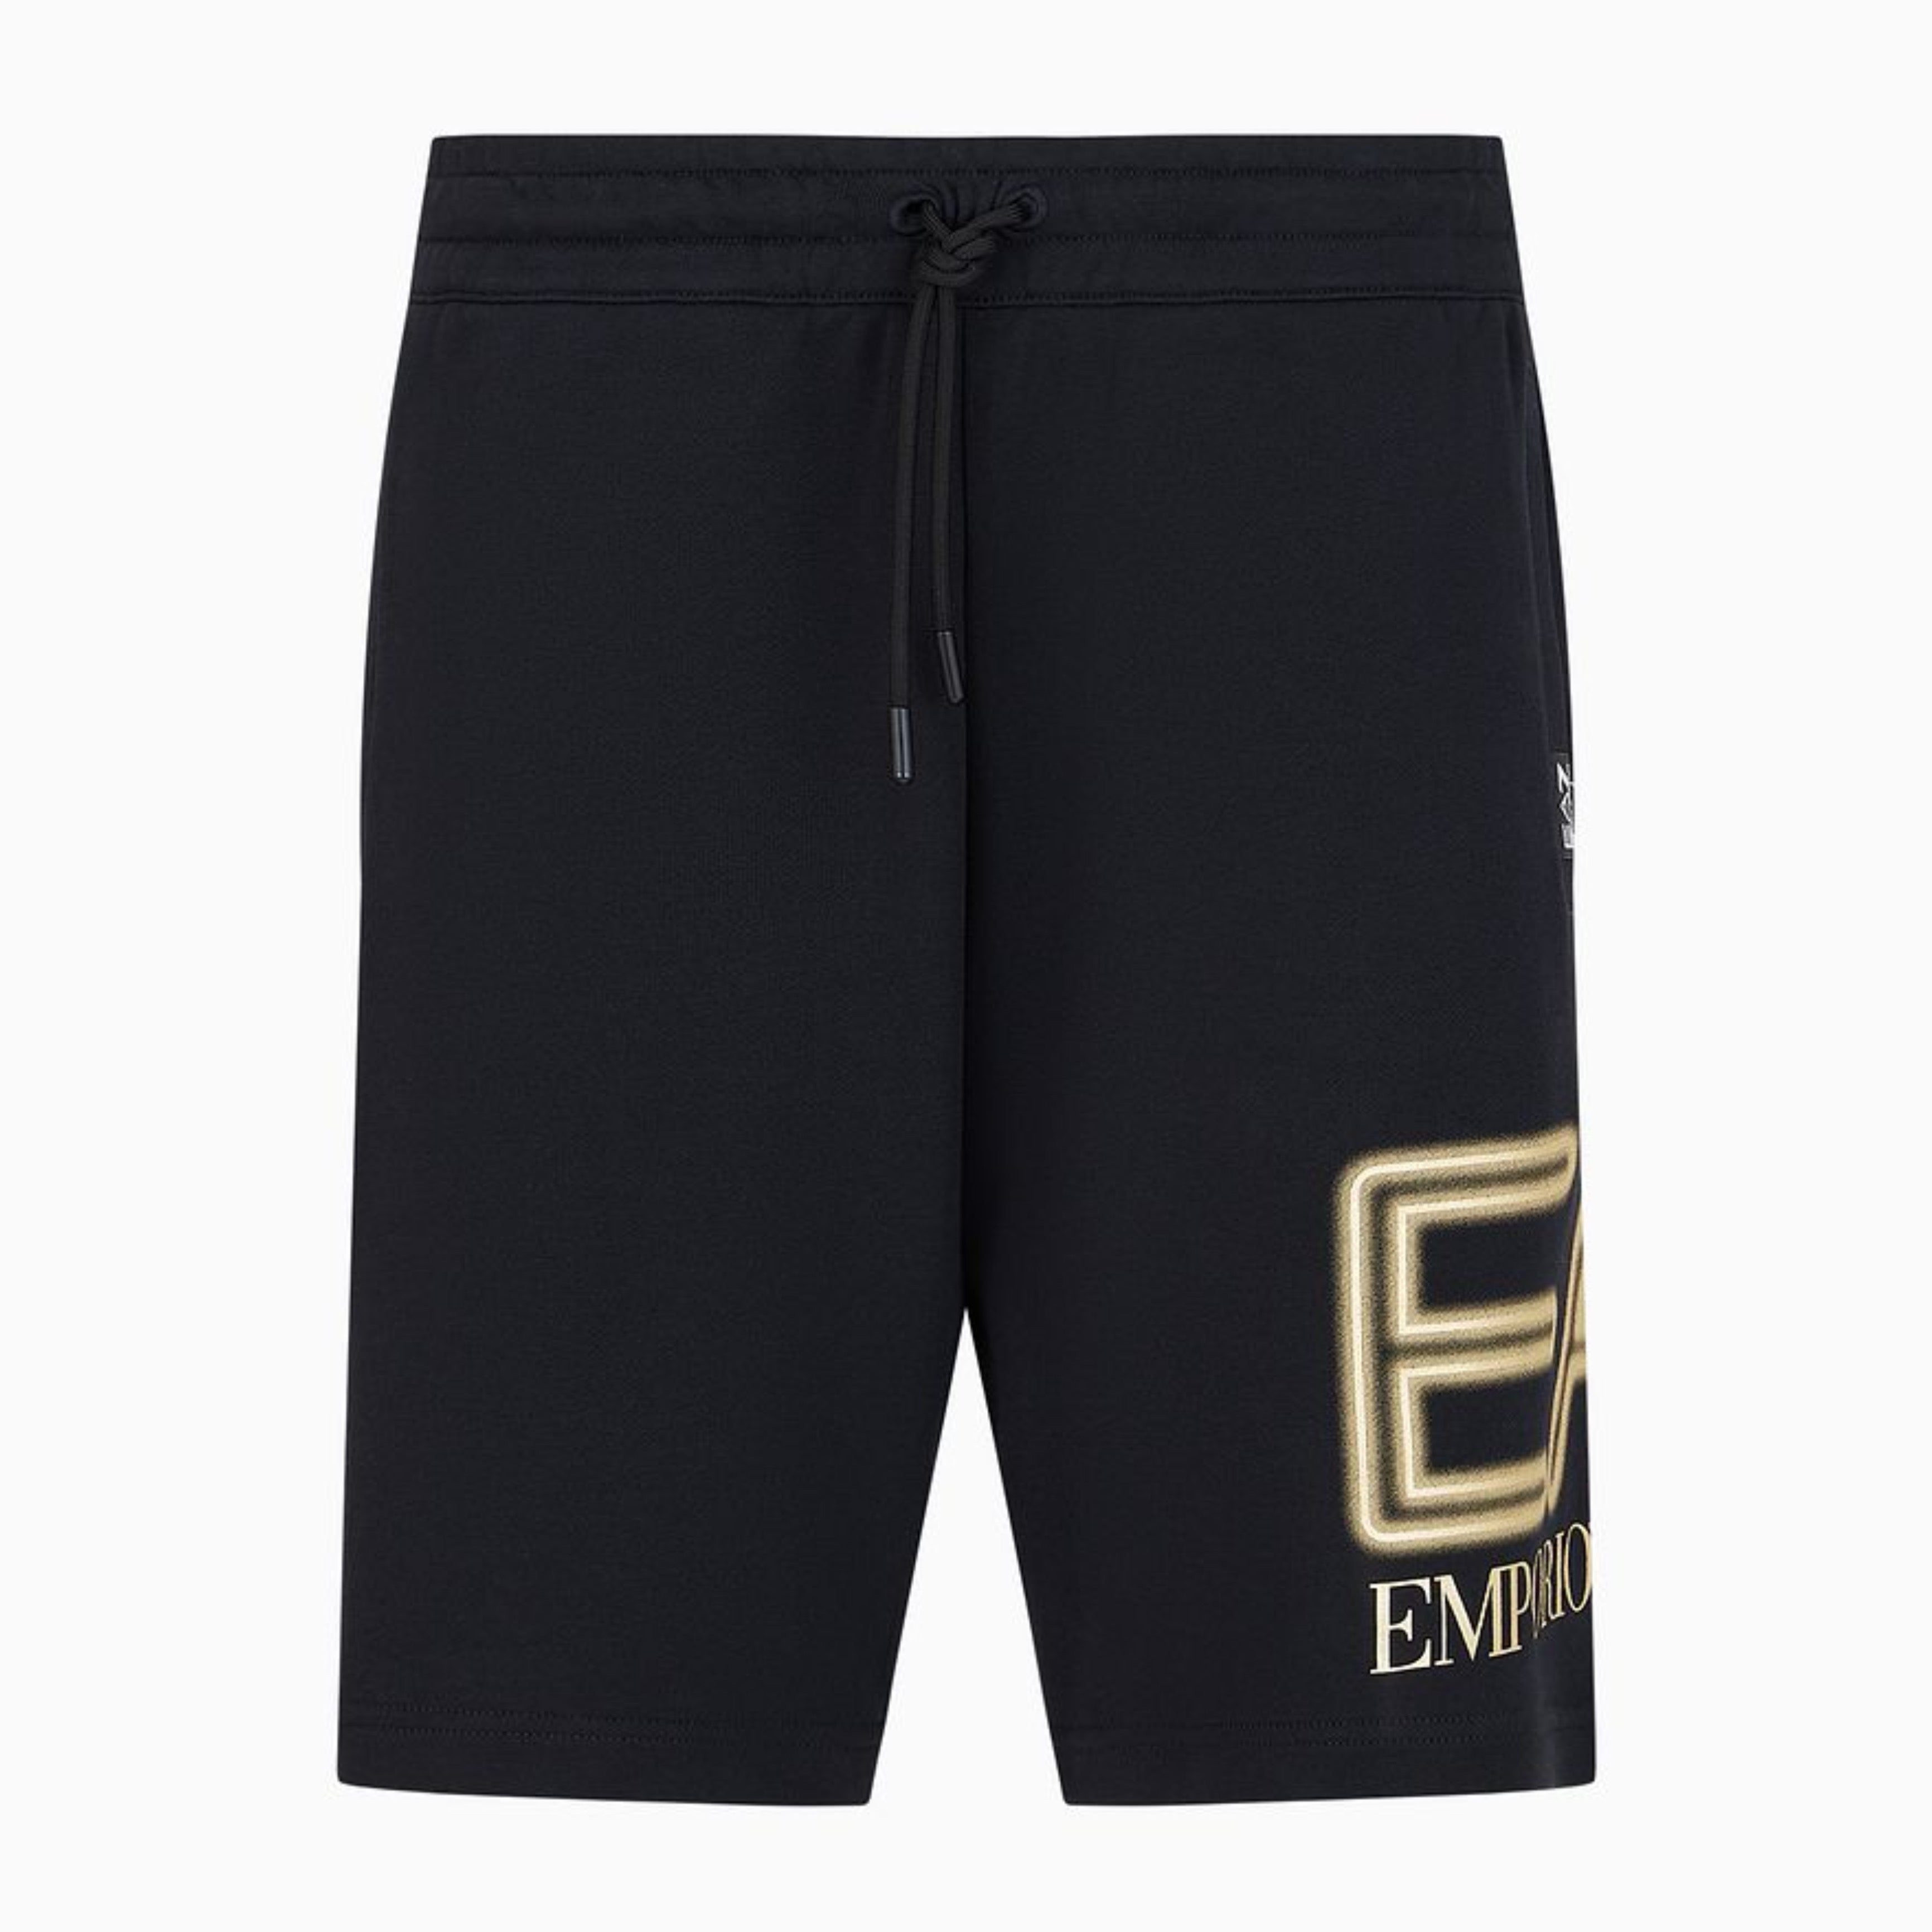 EA7 Emporio Armani men shorts